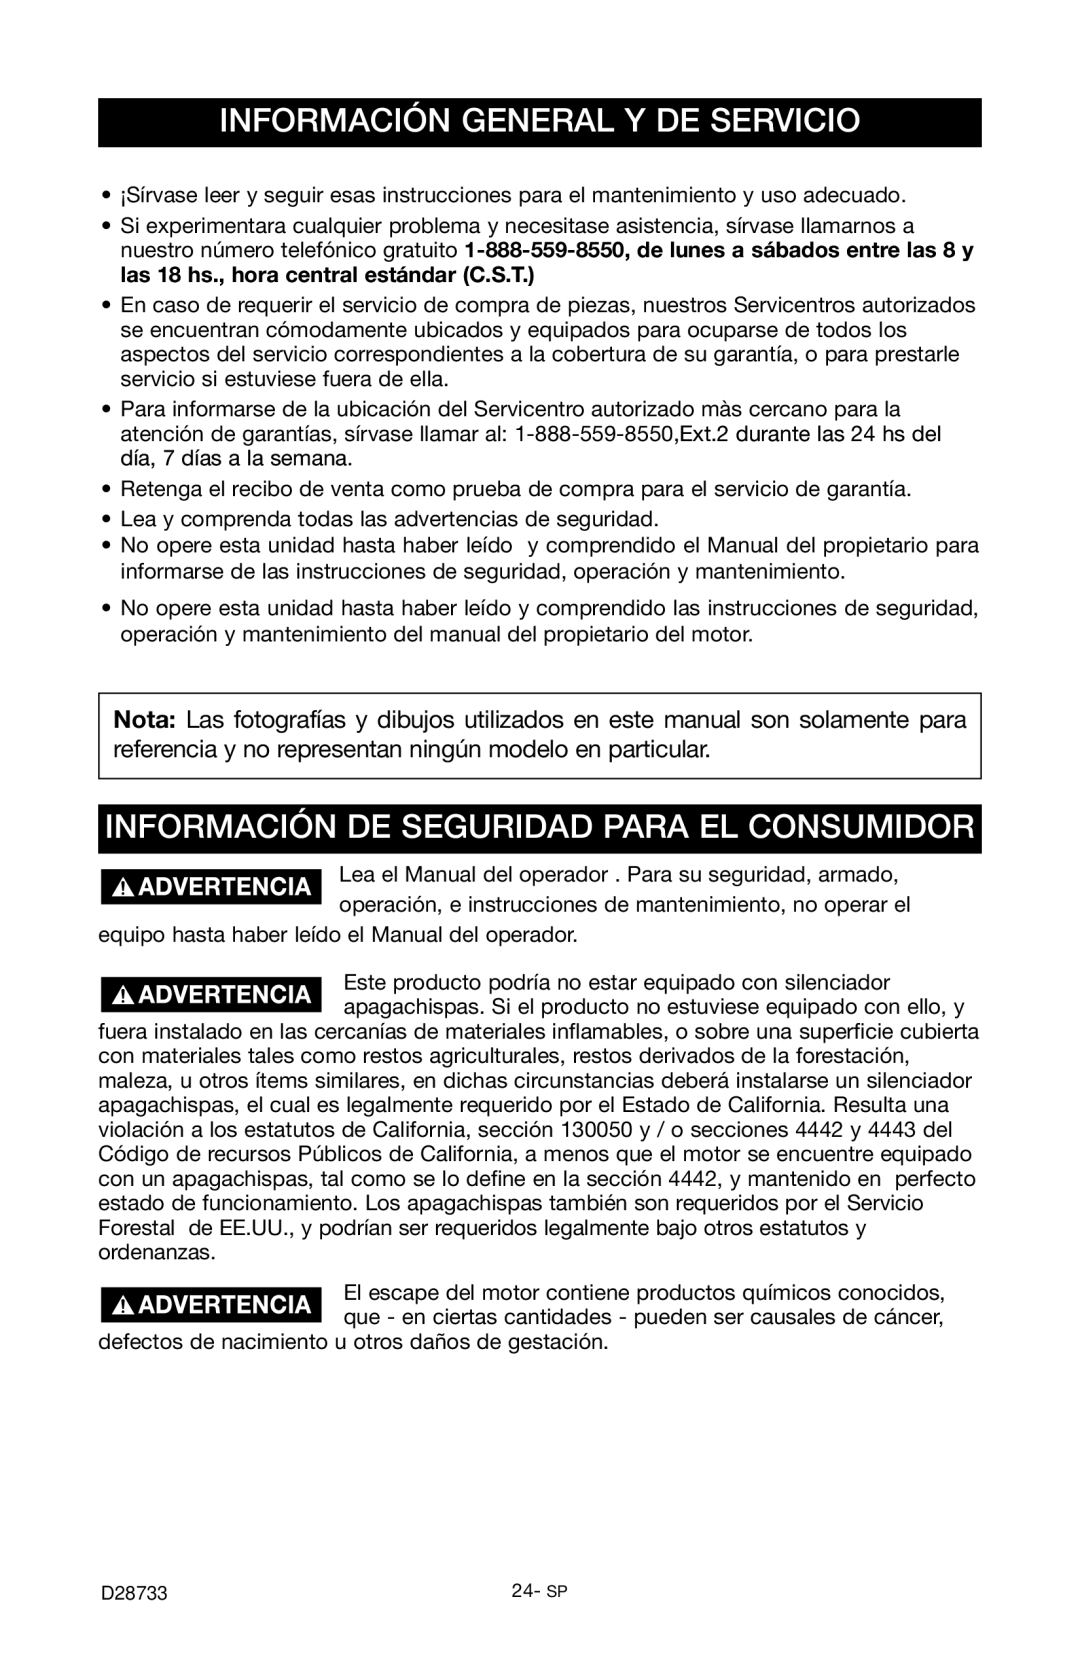 Porter-Cable PGN350, D28733-034-0 Información General Y De Servicio, Información De Seguridad Para El Consumidor 